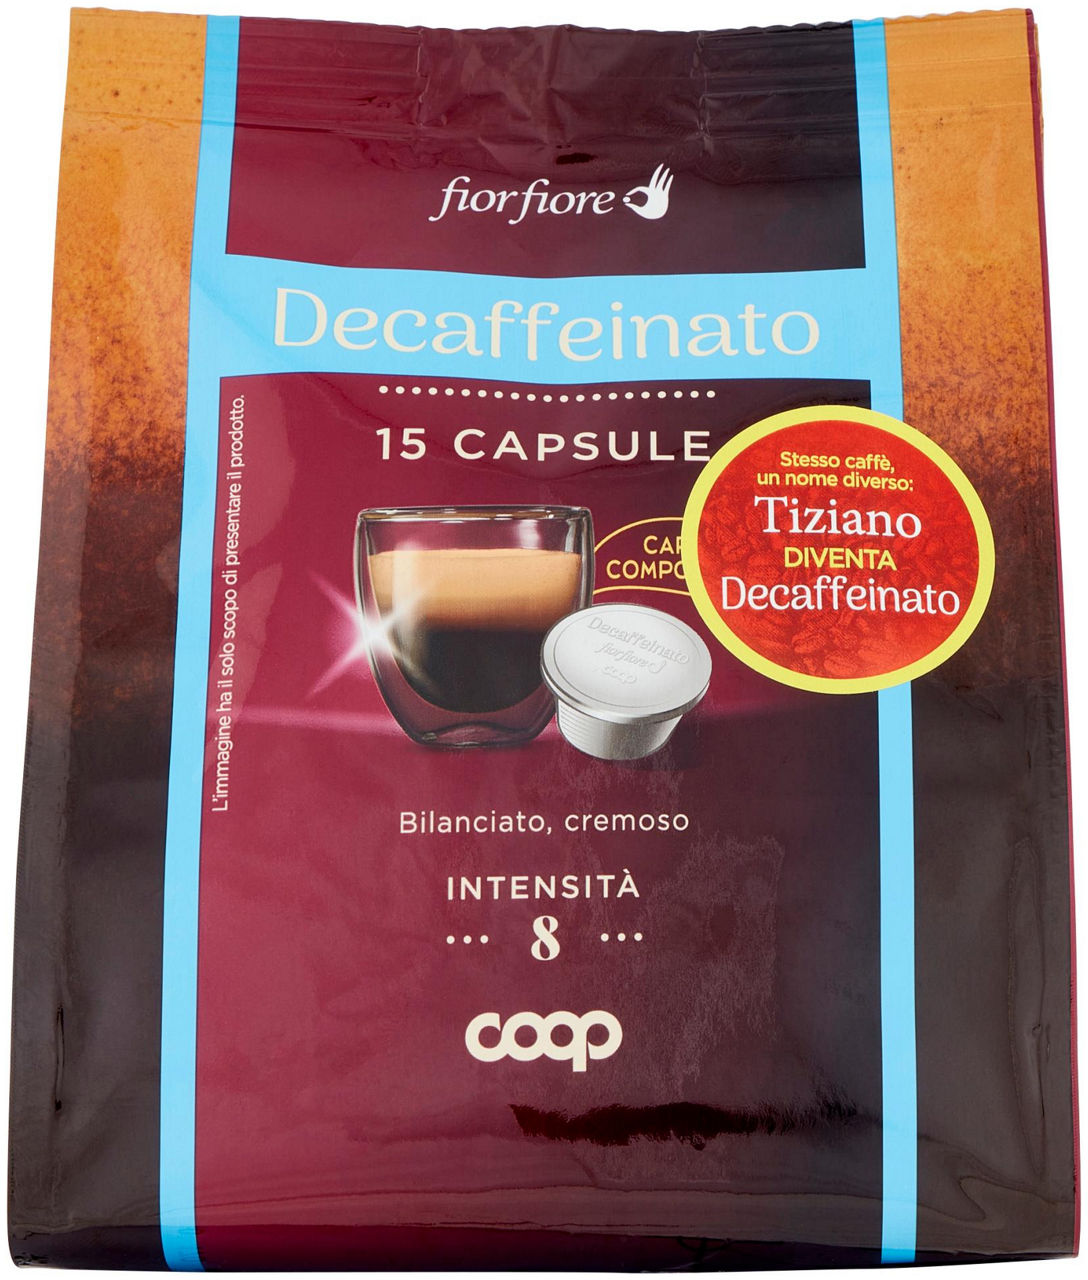 Caffe' decaffeinato in capsule compostabil "tiziano" fior fiore coop pz 15 g 95